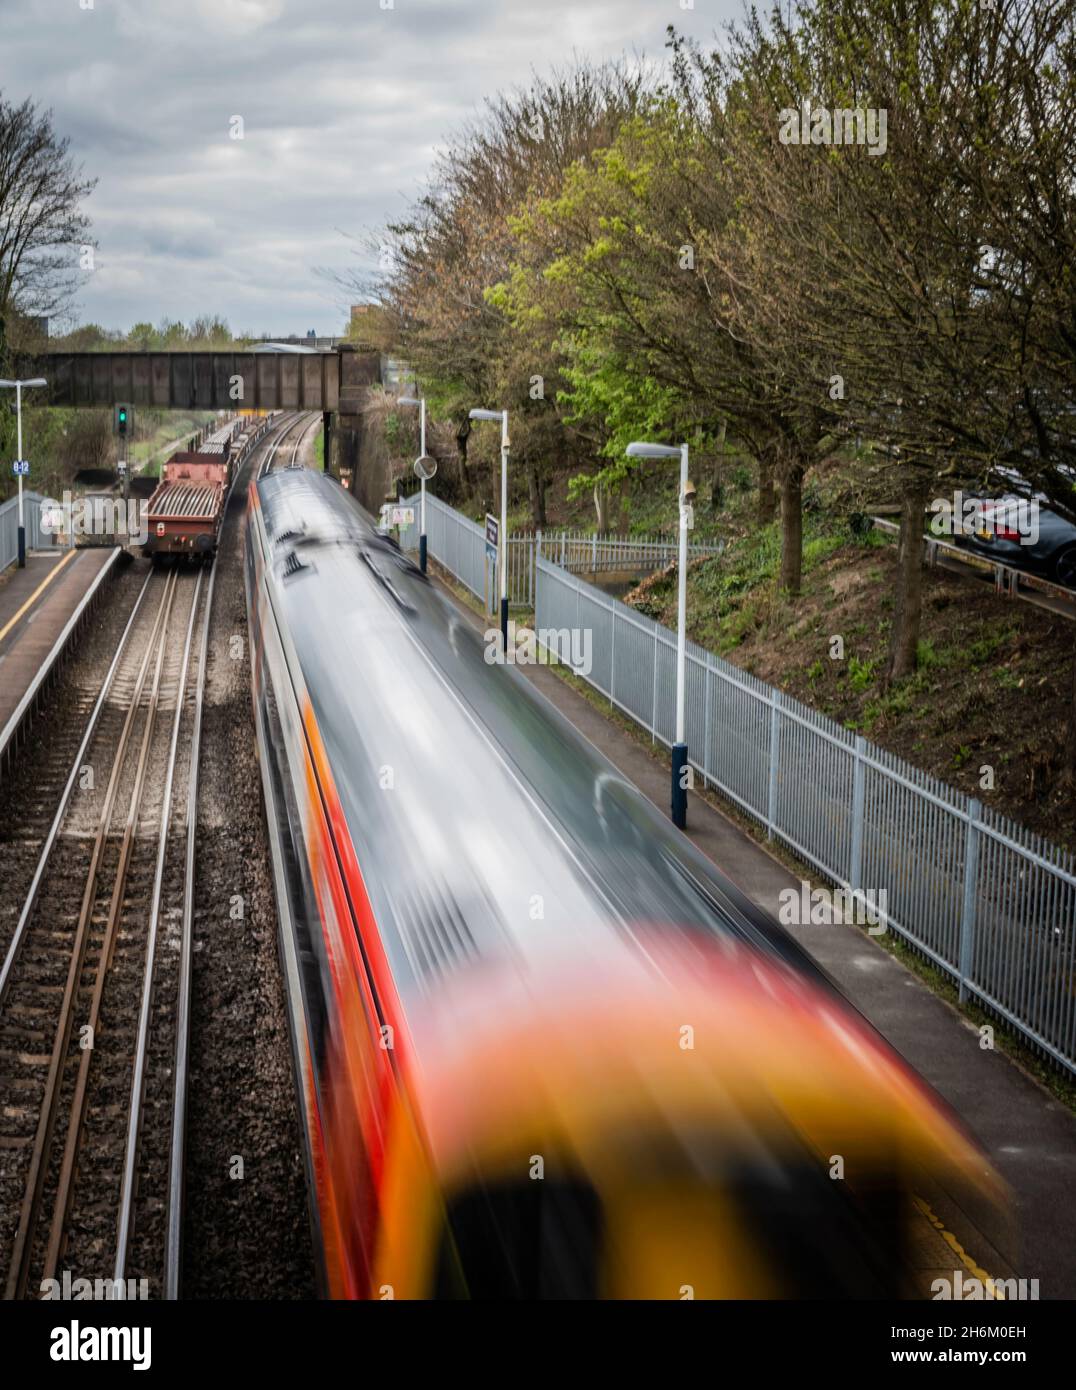 Speeding train going through station (motion blur) Stock Photo